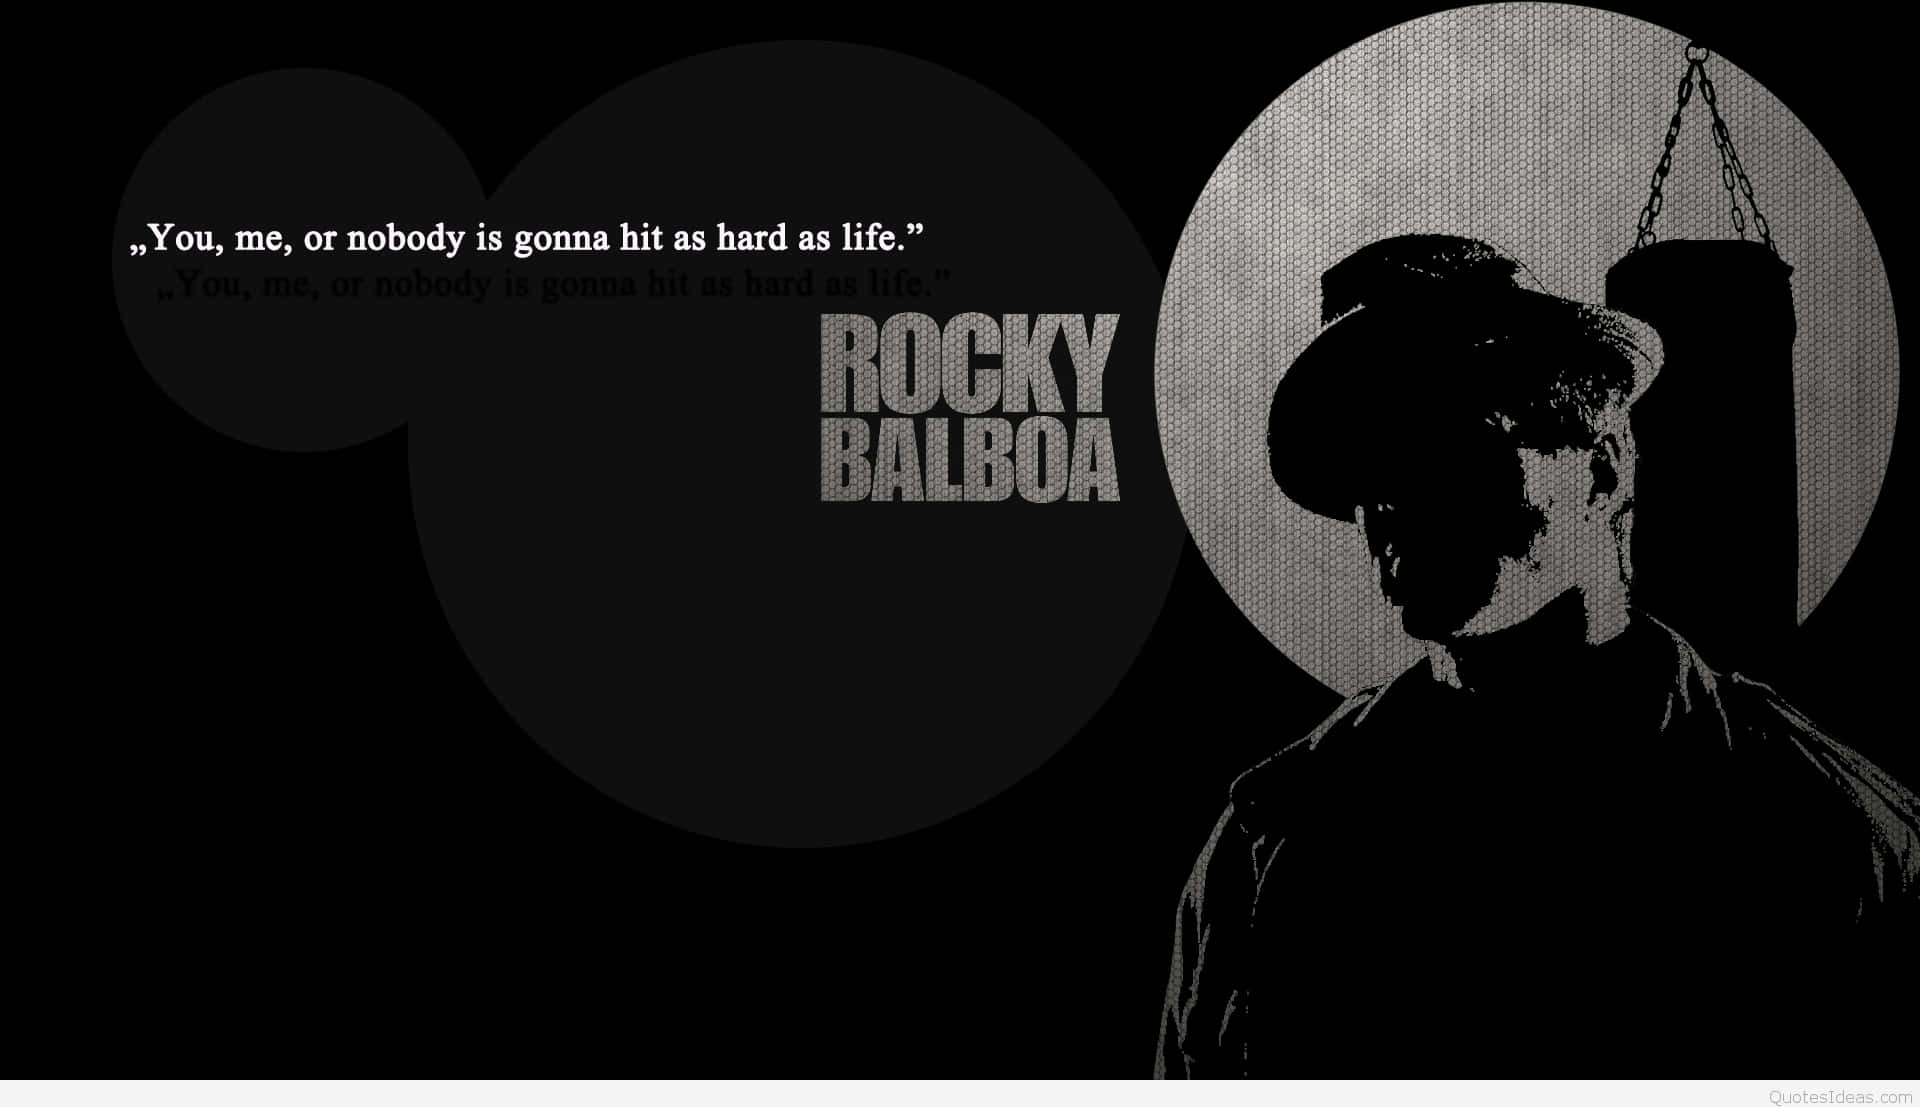 Citazionedi Rocky Balboa, Sfondo Nero. Sfondo